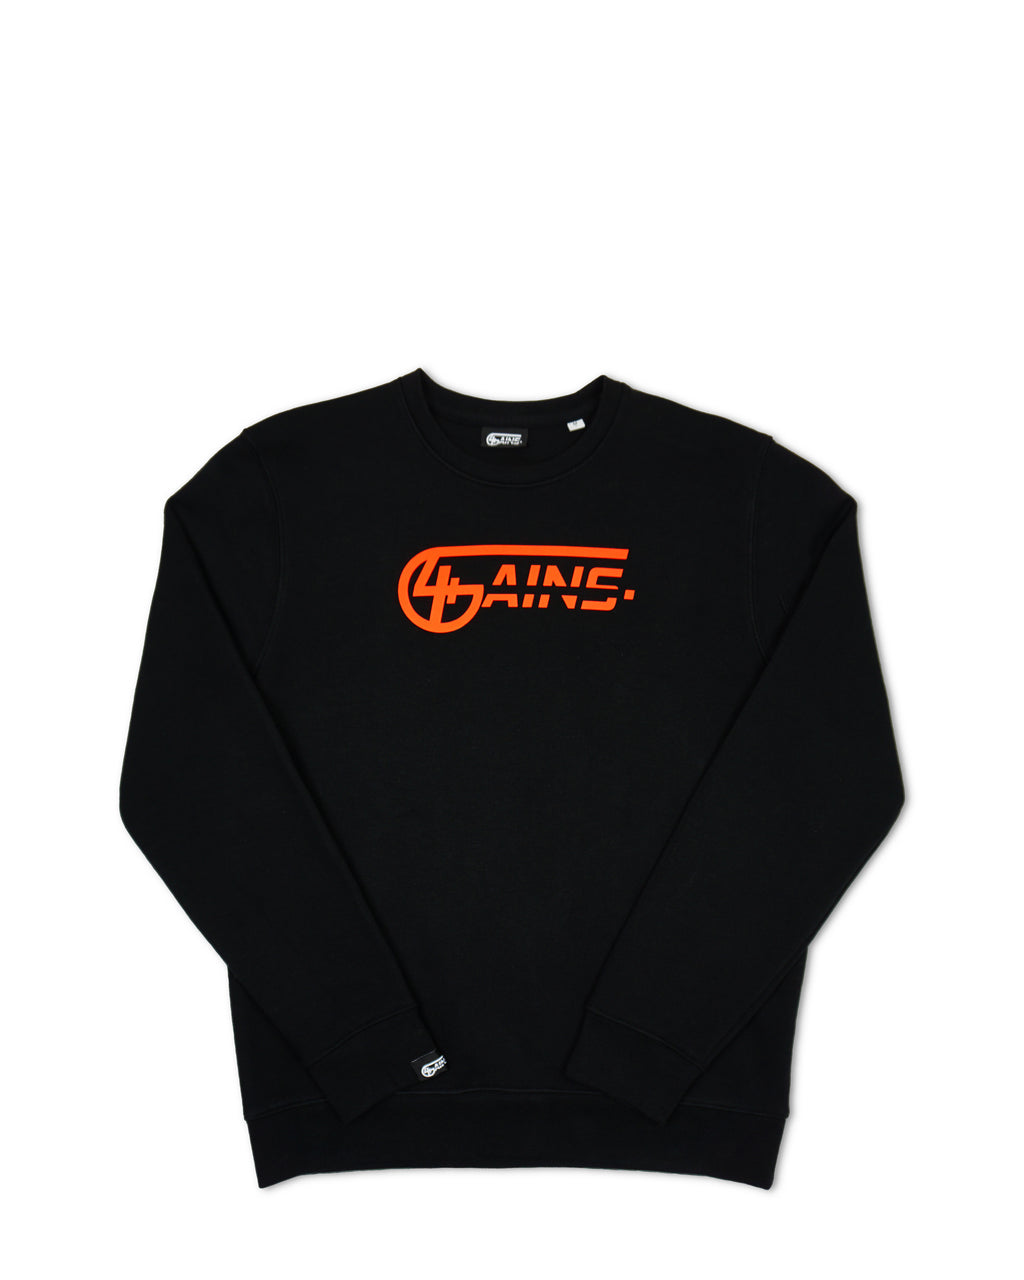 4GAINS unisex Sweater in black/orange